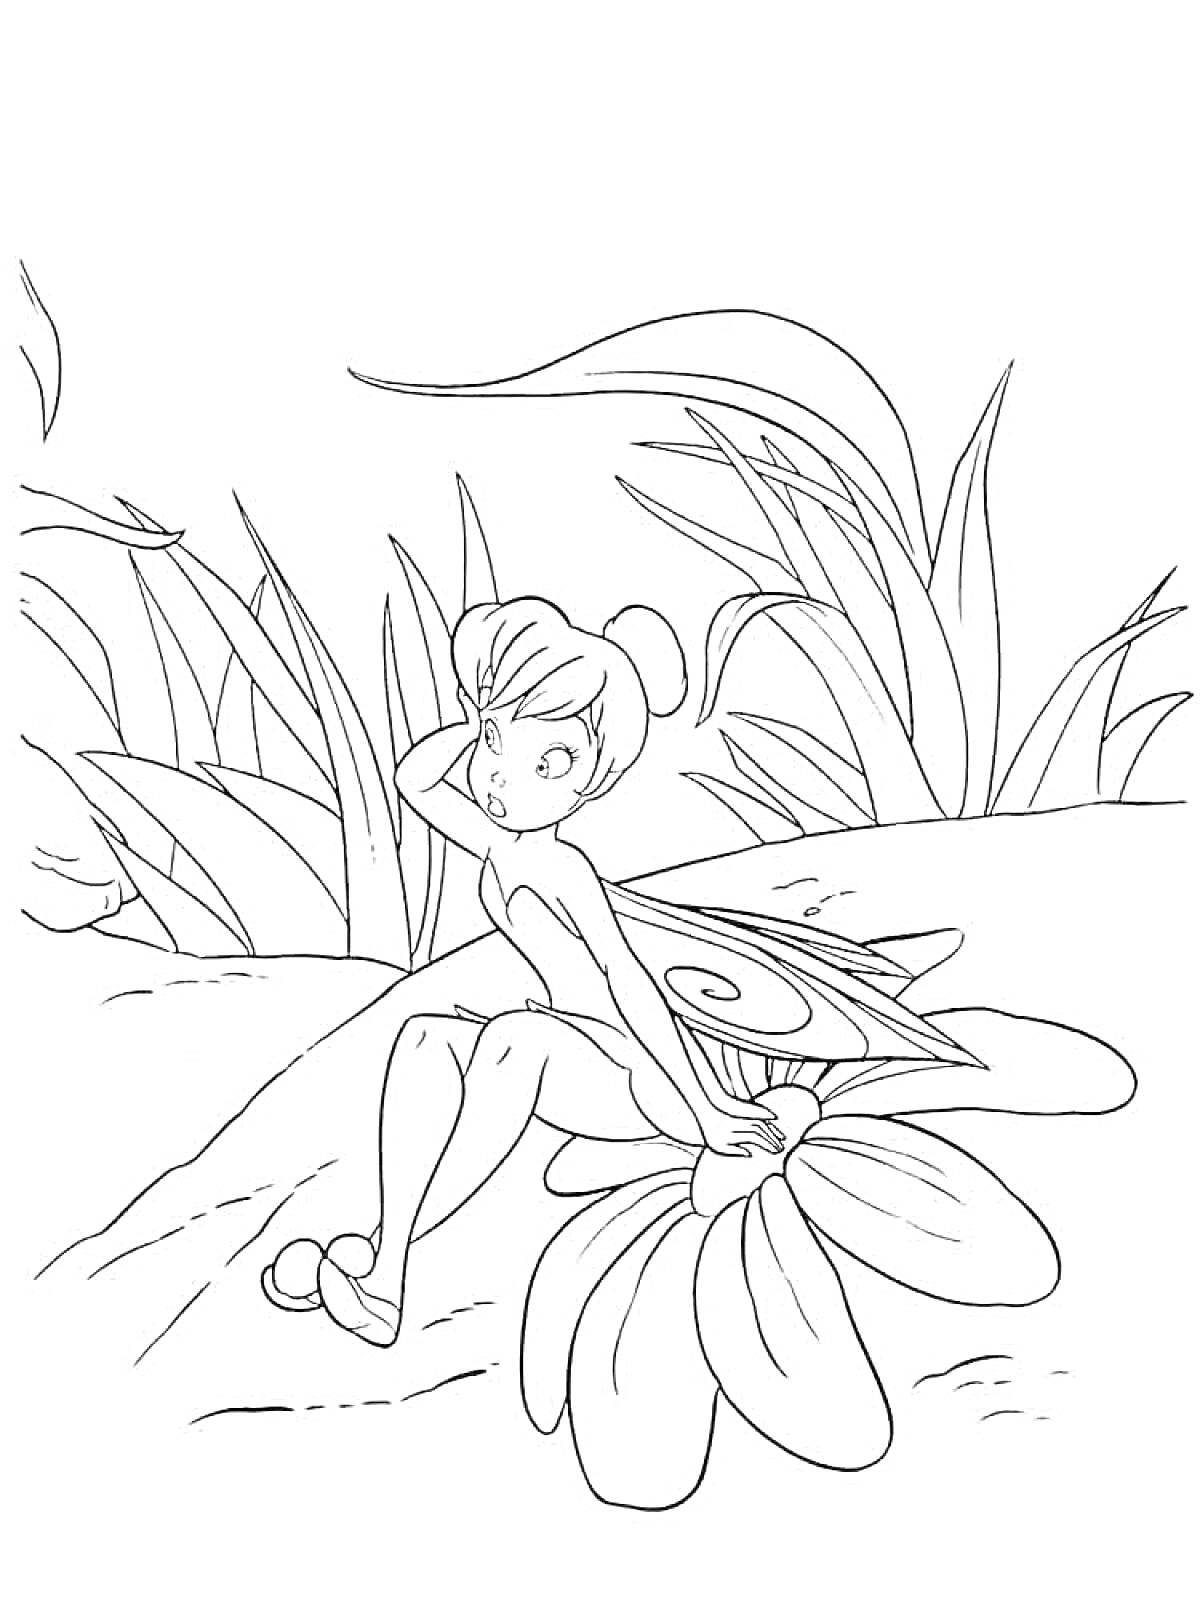 Раскраска Фея Динь-Динь сидит на цветке перед зарослями травы